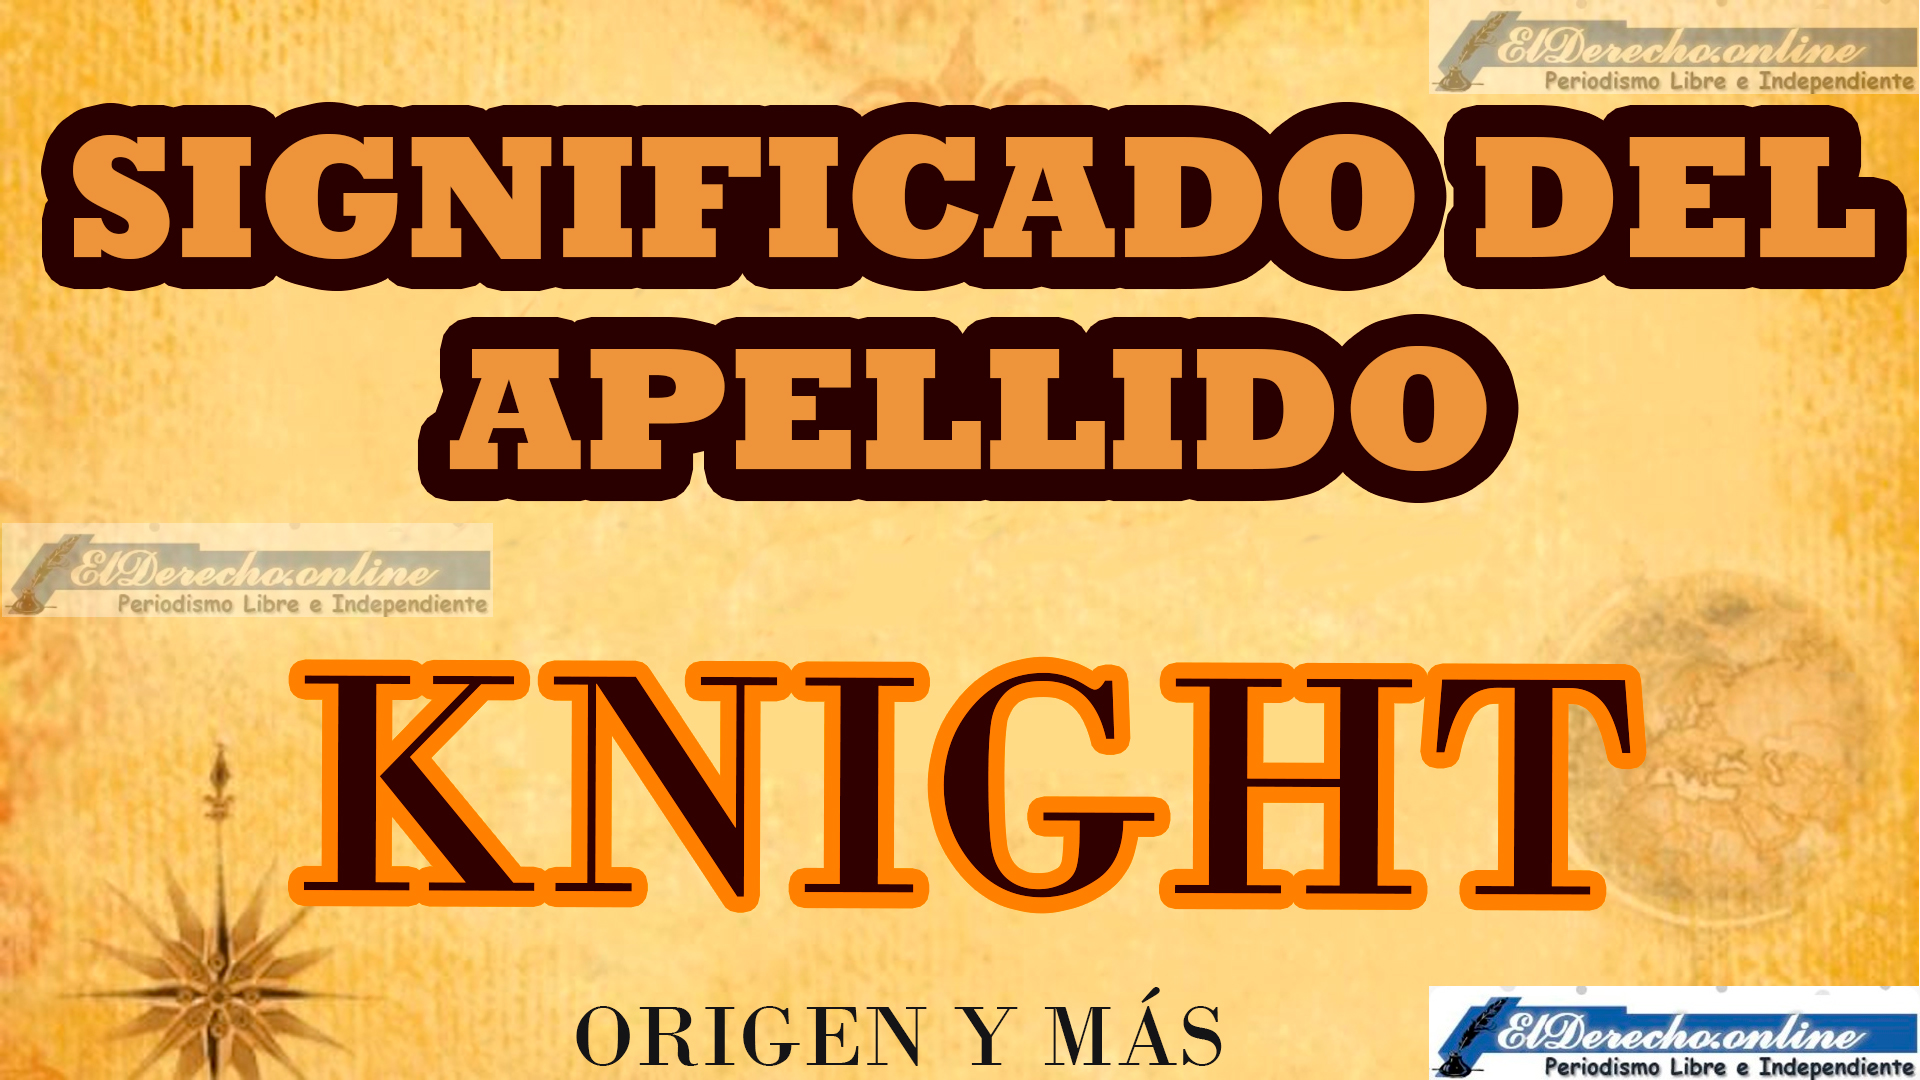 Significado del apellido Knight, Origen y más